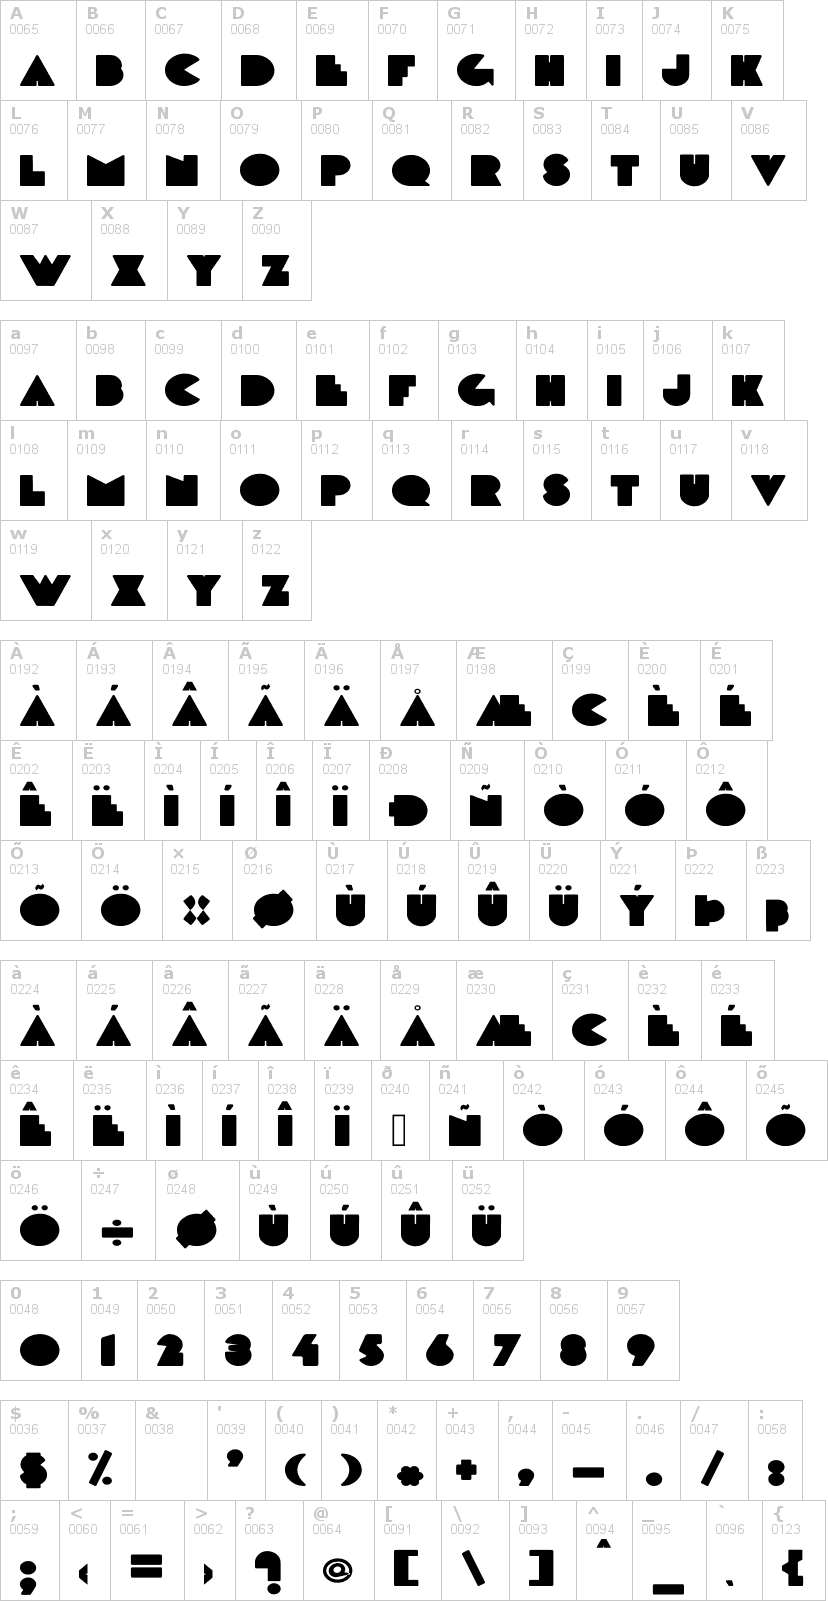 Lettere dell'alfabeto del font delarge con le quali è possibile realizzare adesivi prespaziati